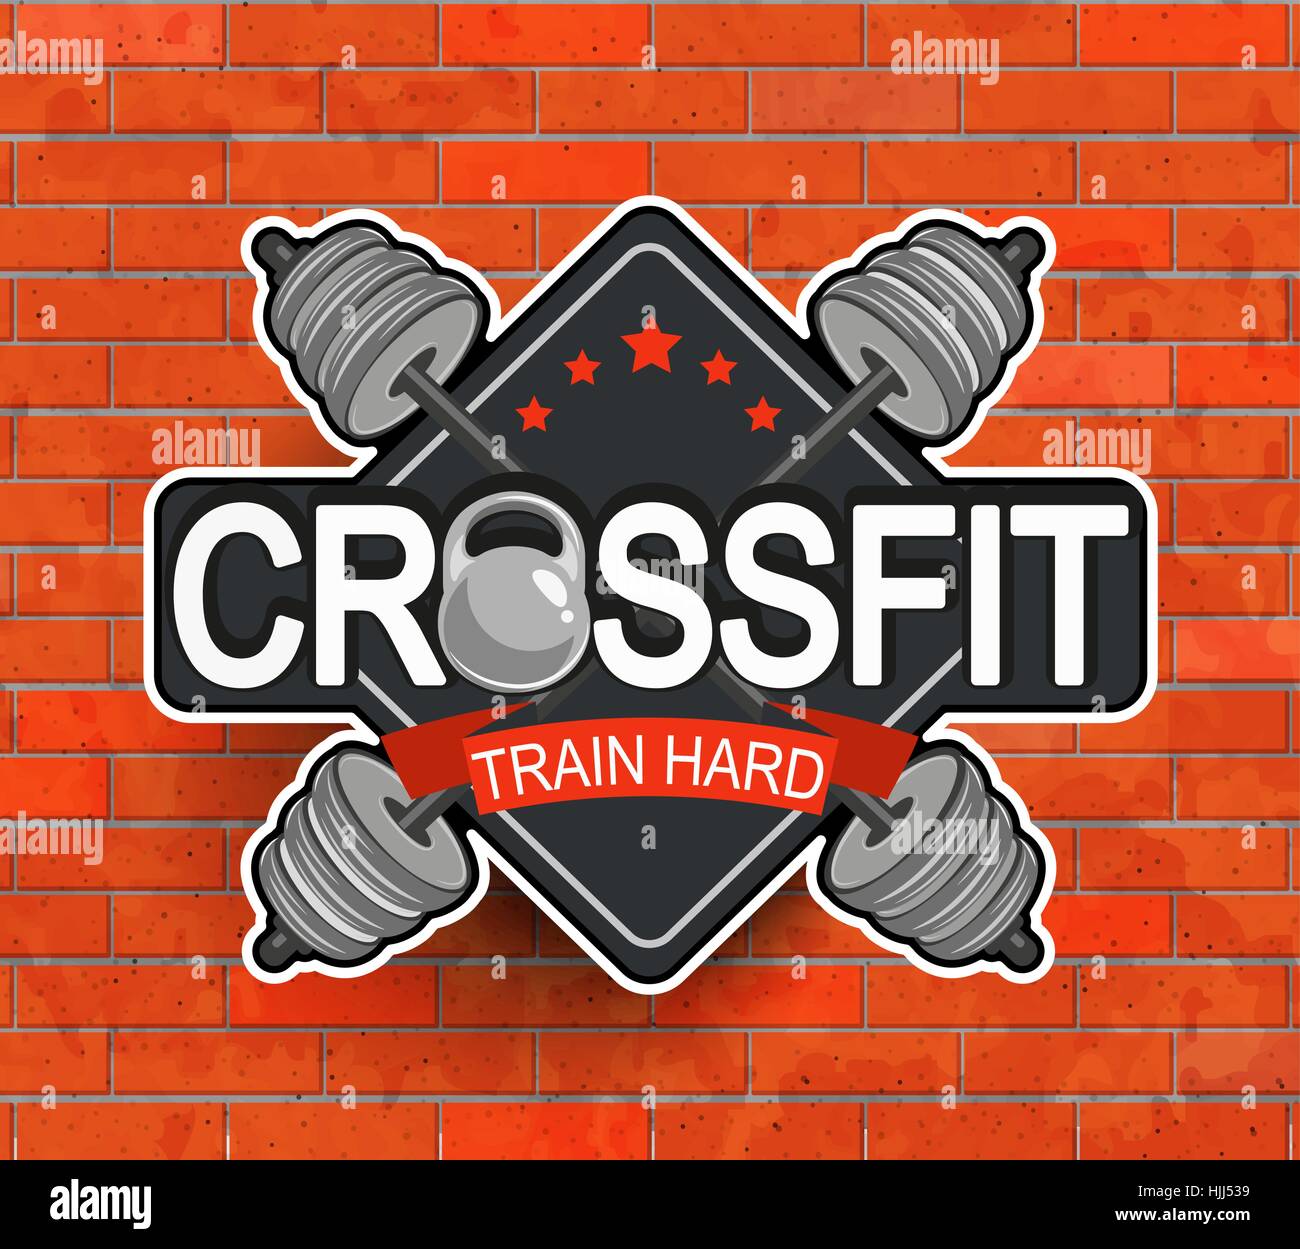 crossfit logo ideas 1